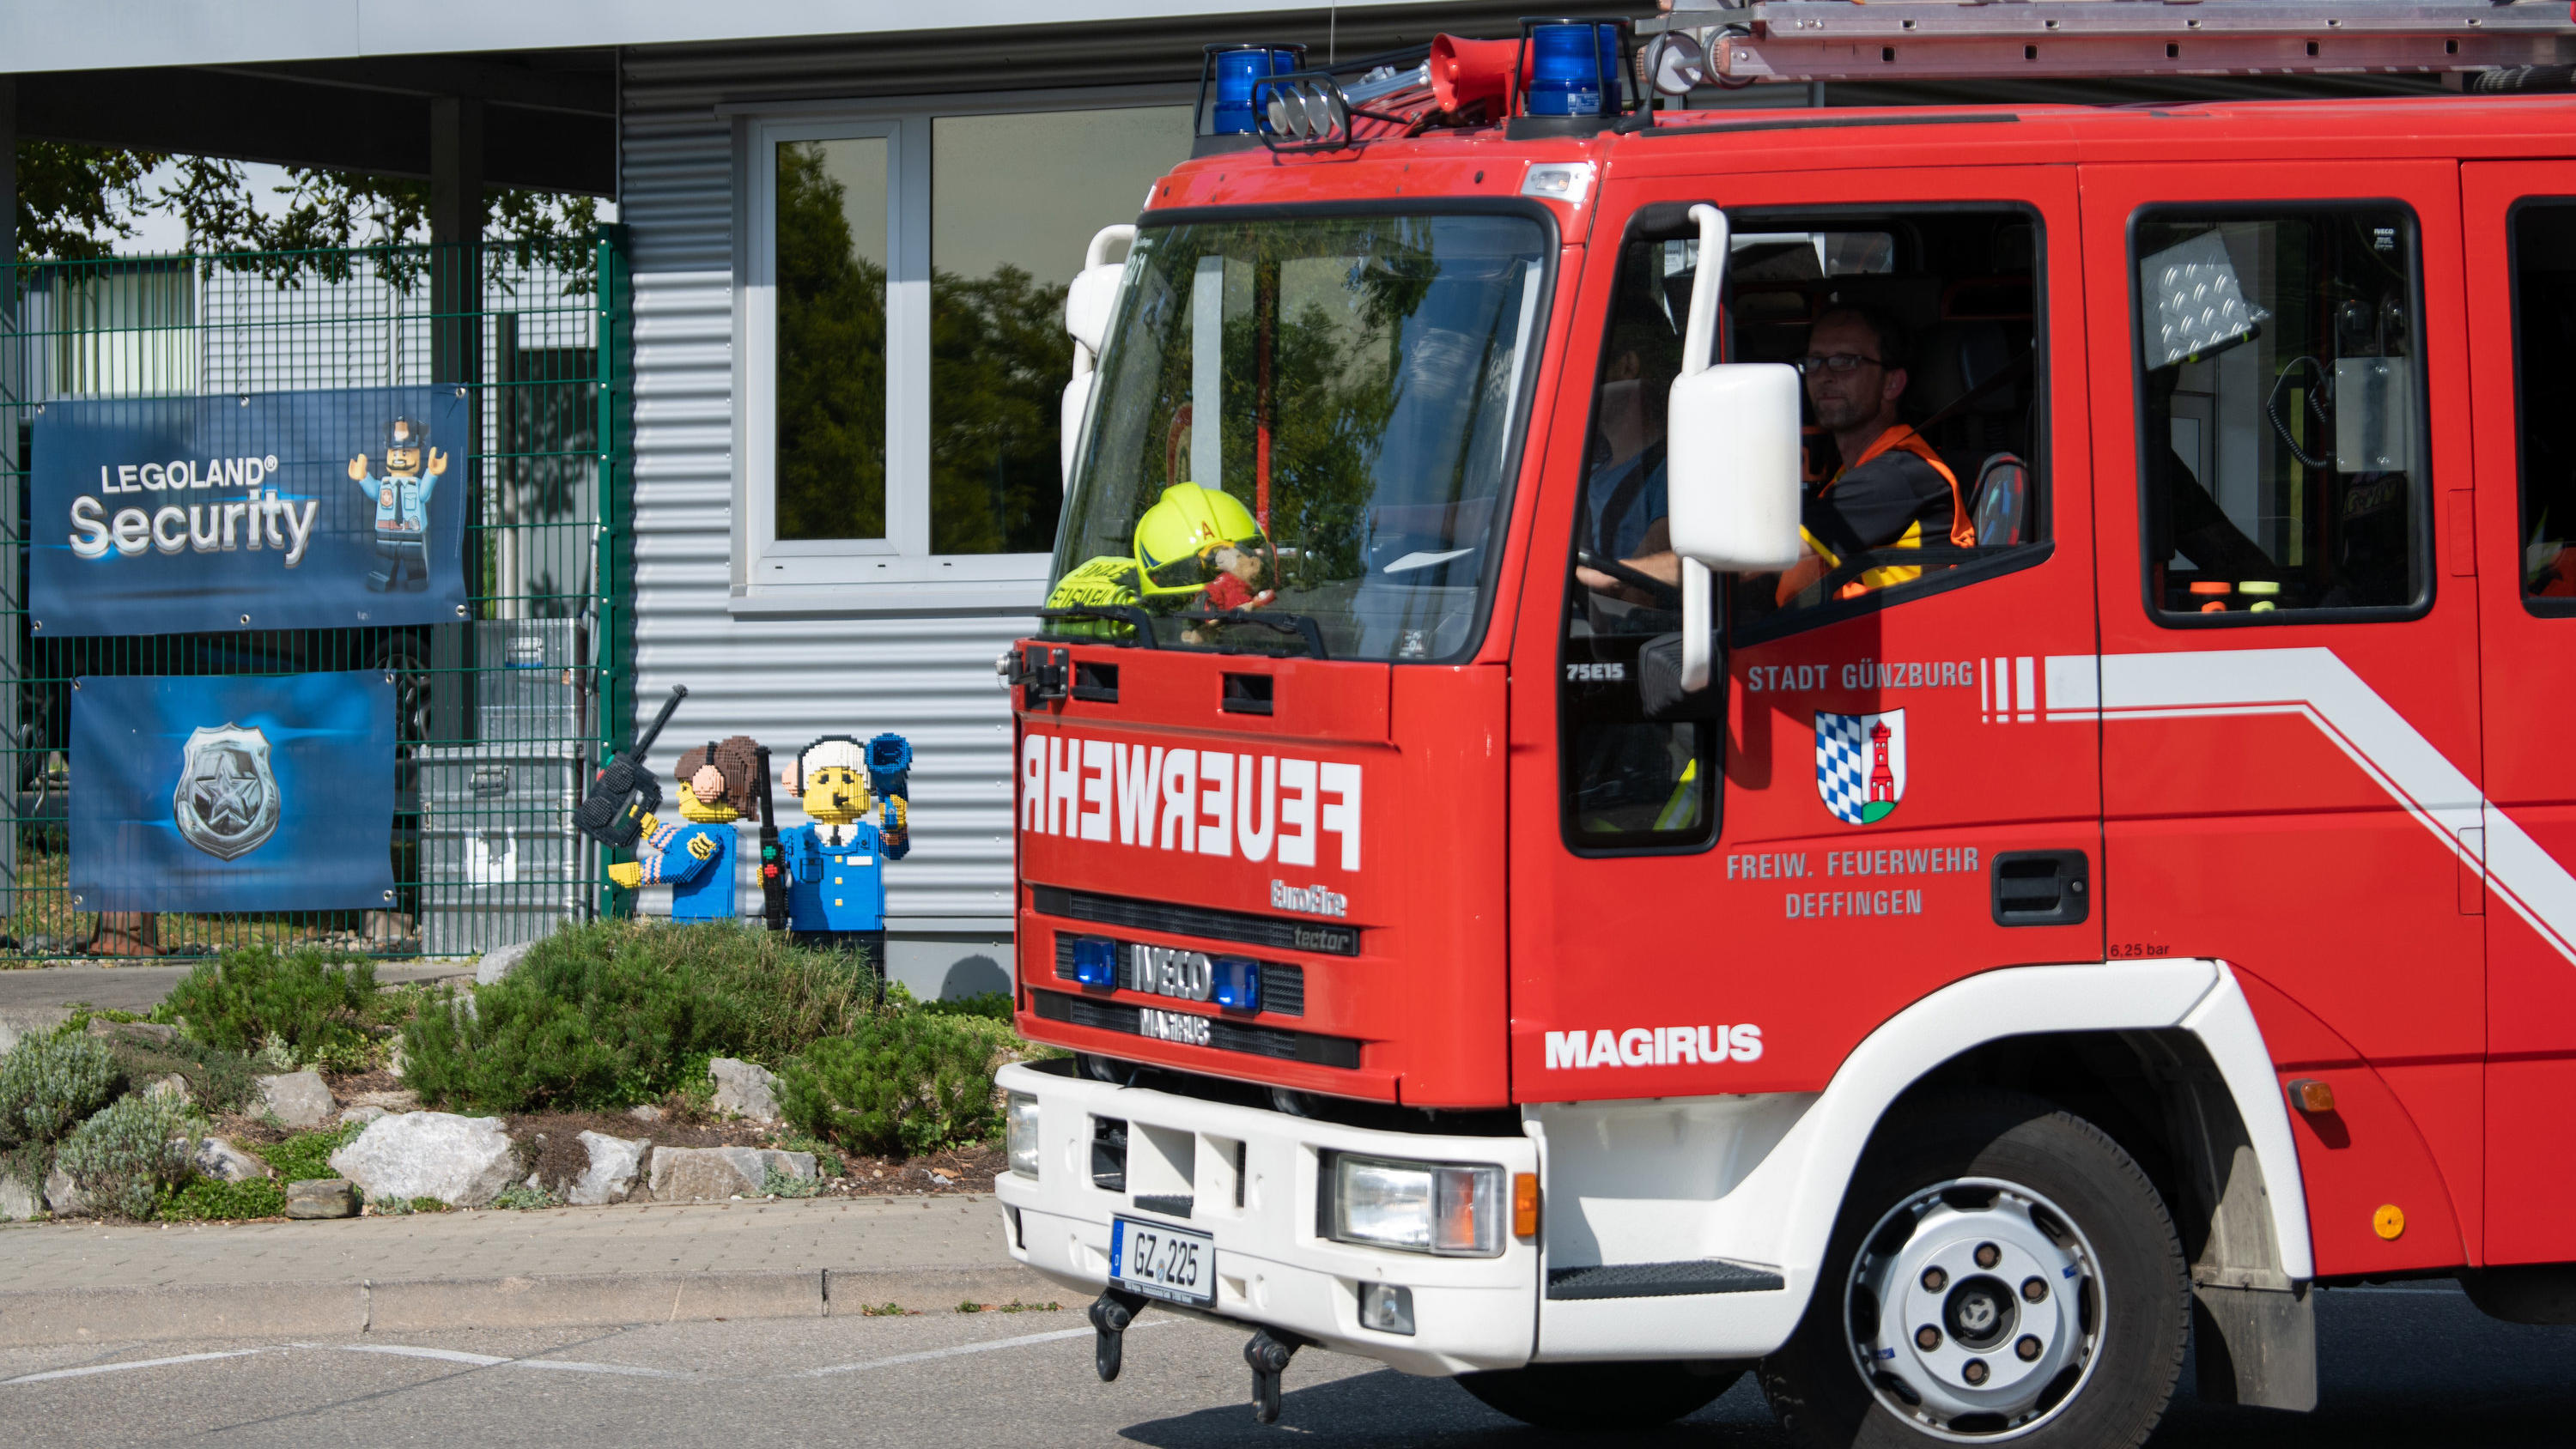 11.08.2022, Bayern, Günzburg: Ein Feuerwehrfahrzeug fährt an der Zufahrt zum Legoland vorbei. Bei einem Unfall auf einer Achterbahn im Legoland im schwäbischen Günzburg sind mindestens 34 Menschen verletzt worden, zwei davon schwer. Foto: Stefan Puch